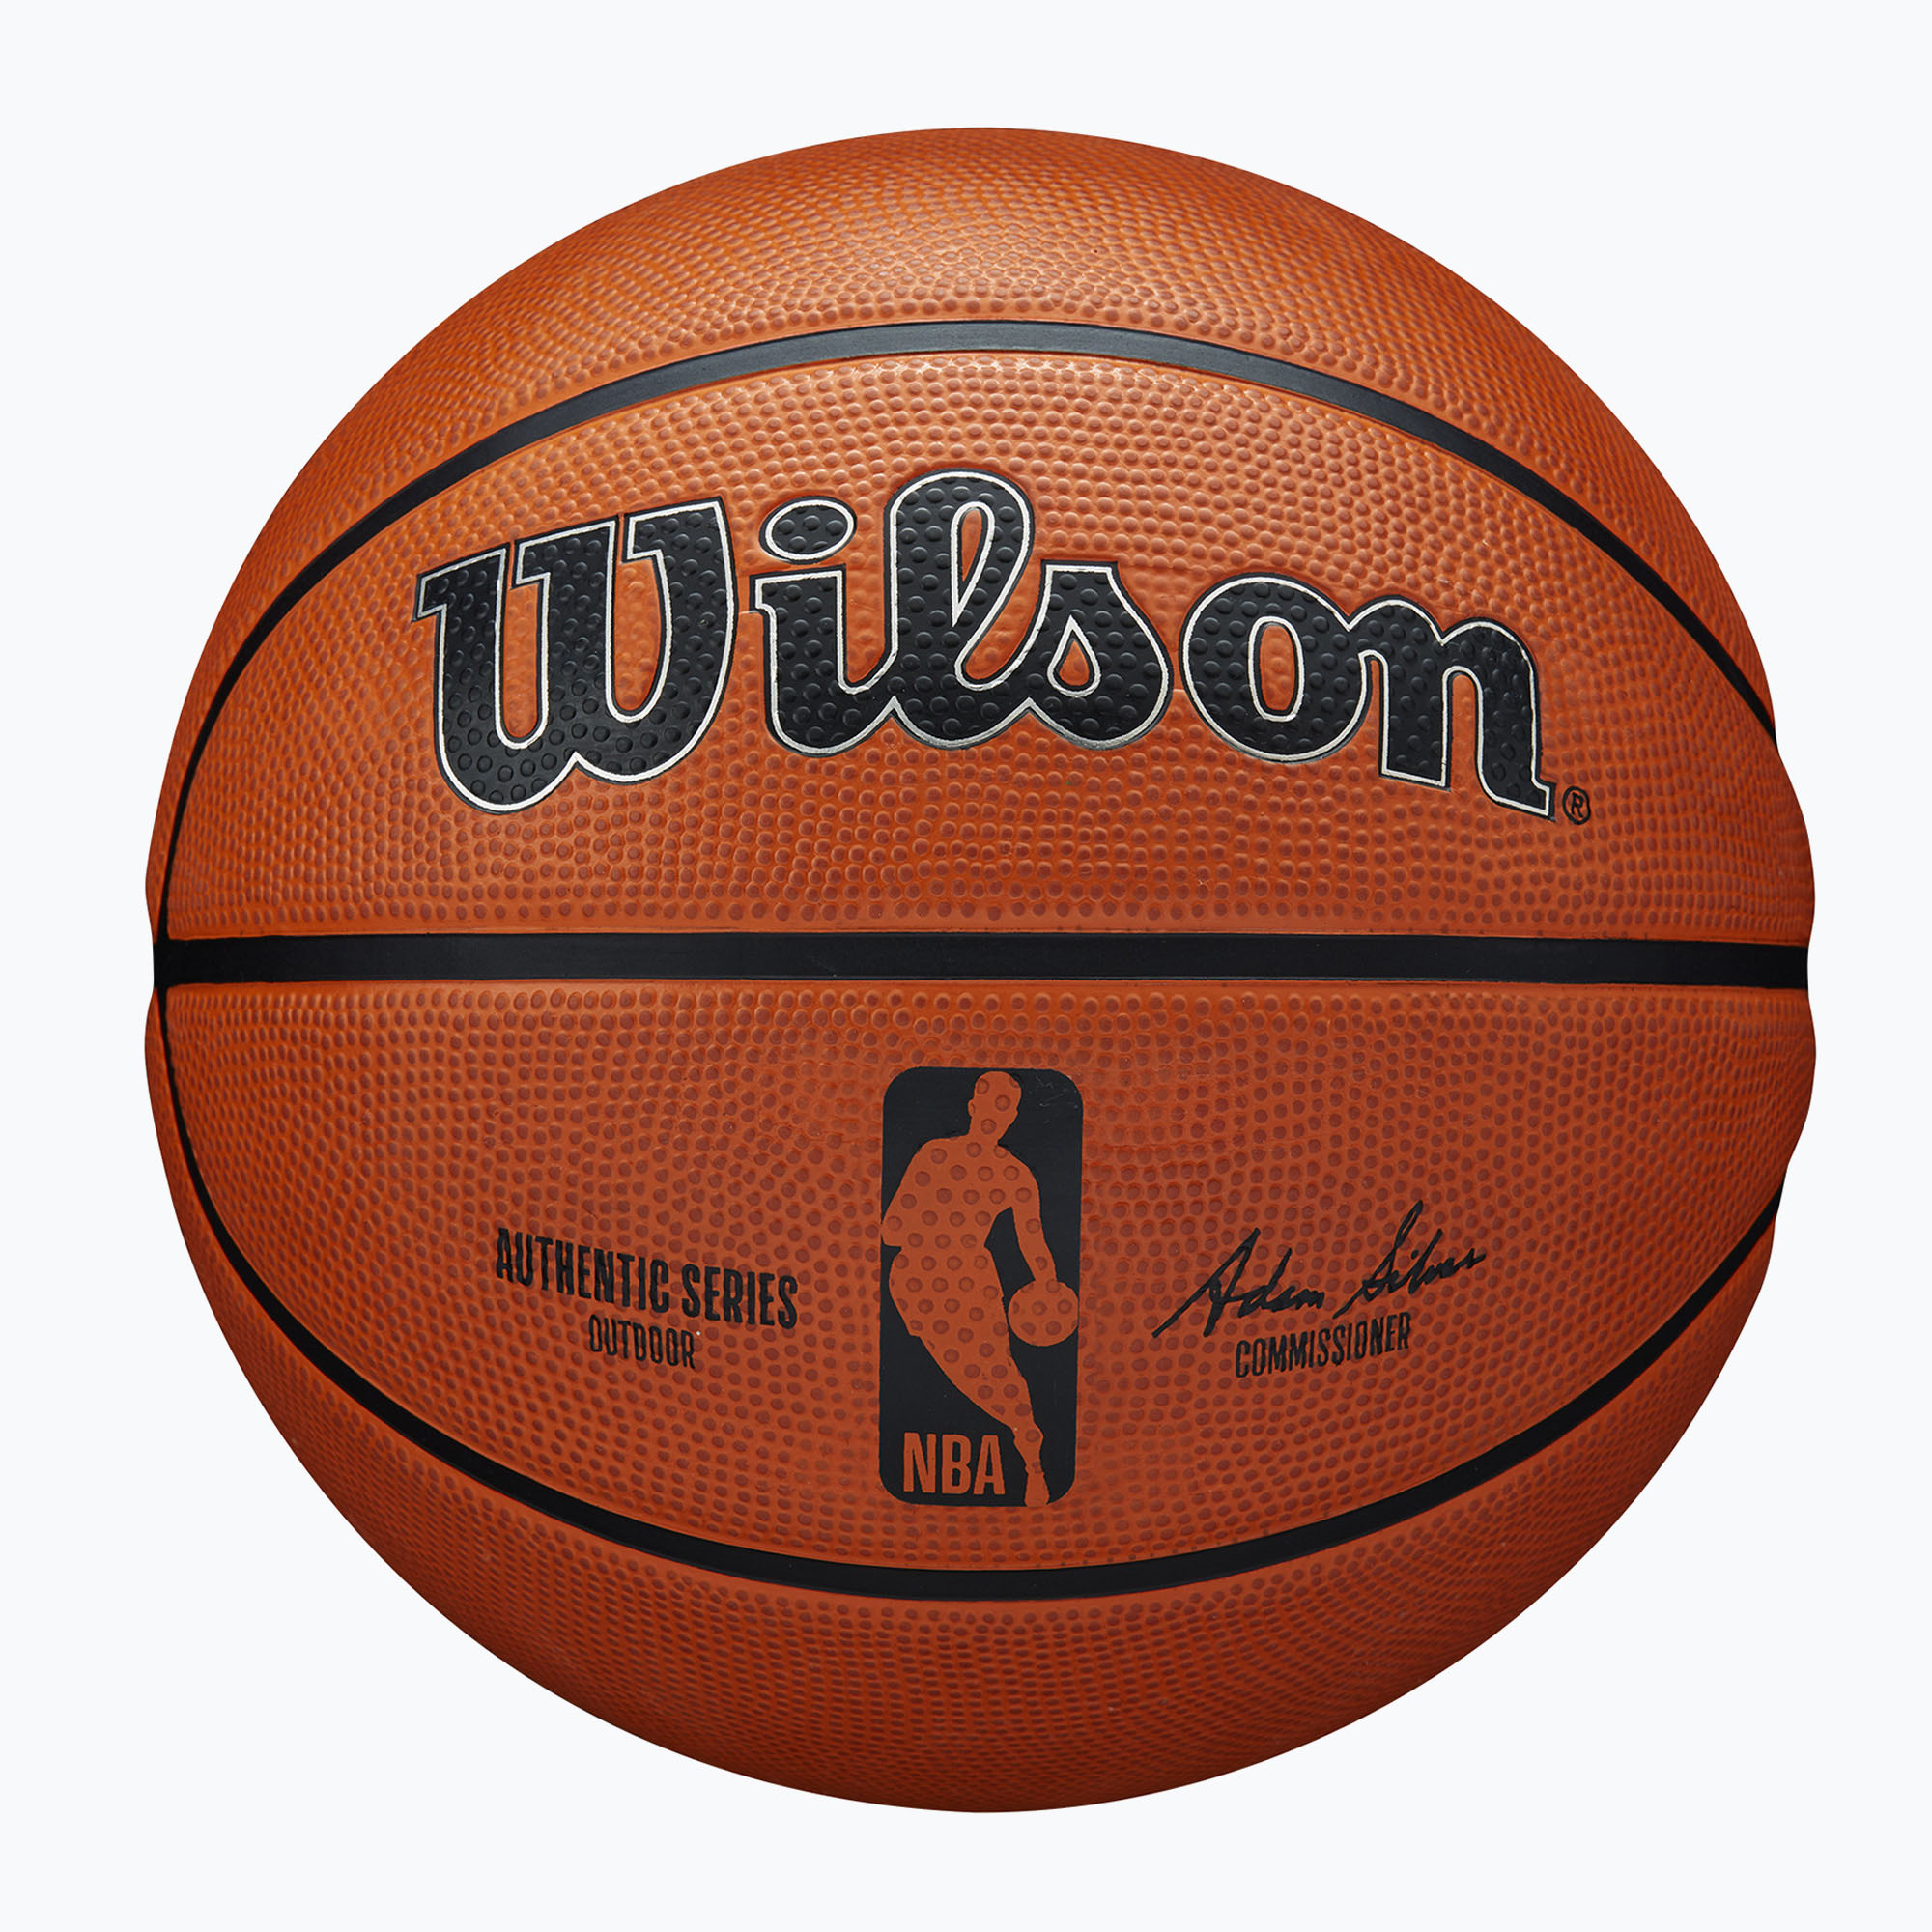 Уилсън NBA автентична серия баскетбол на открито WTB7300XB06 размер 6